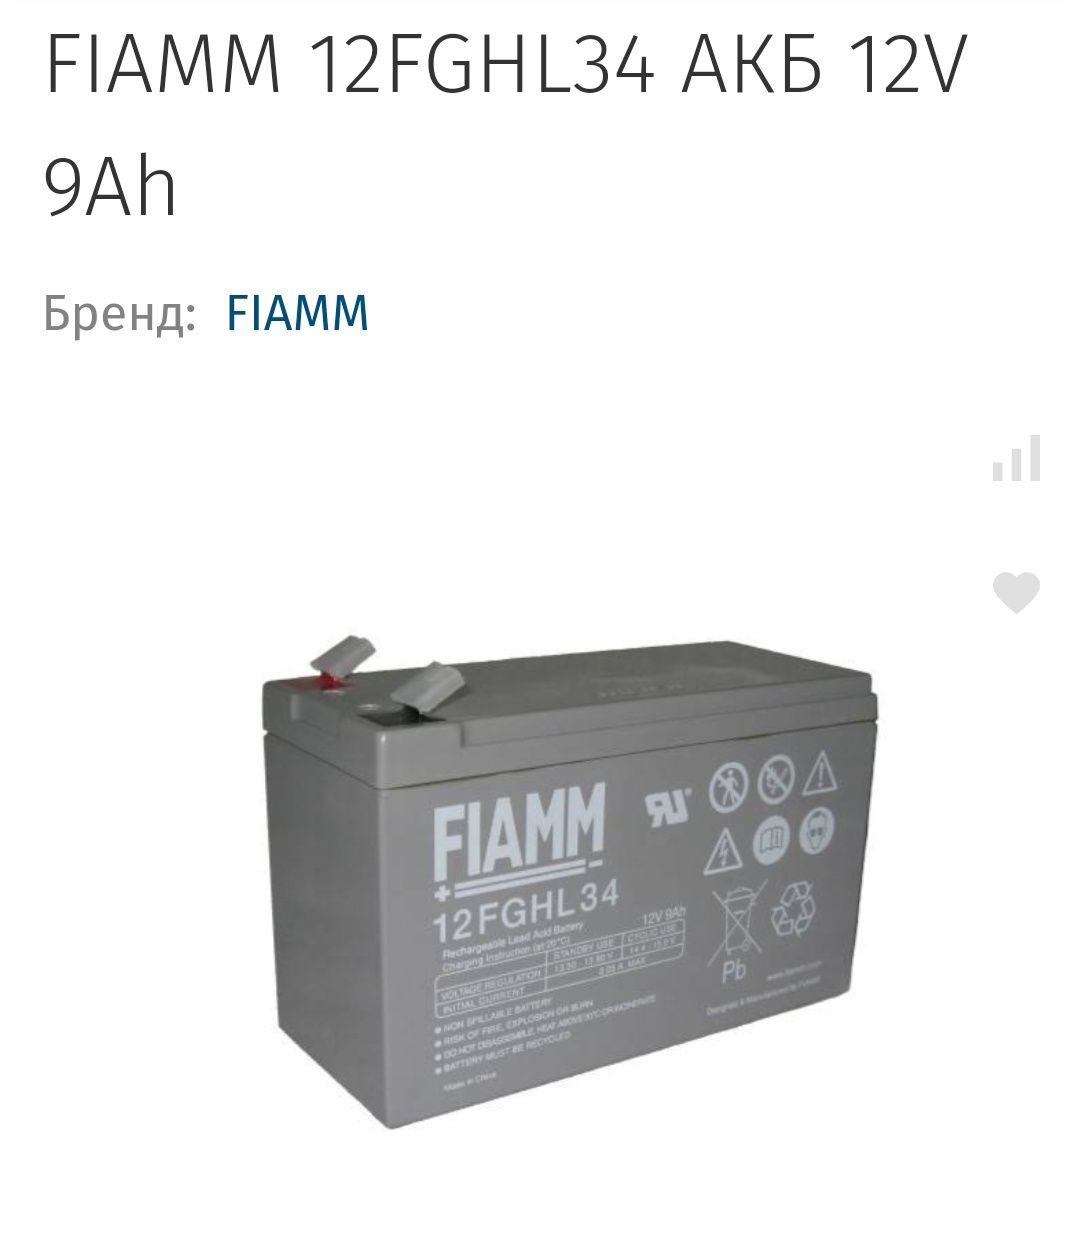 Гелевий аккумулятор FIAMM 12FGHL34 для UPS, ИБП, сигнализації,.